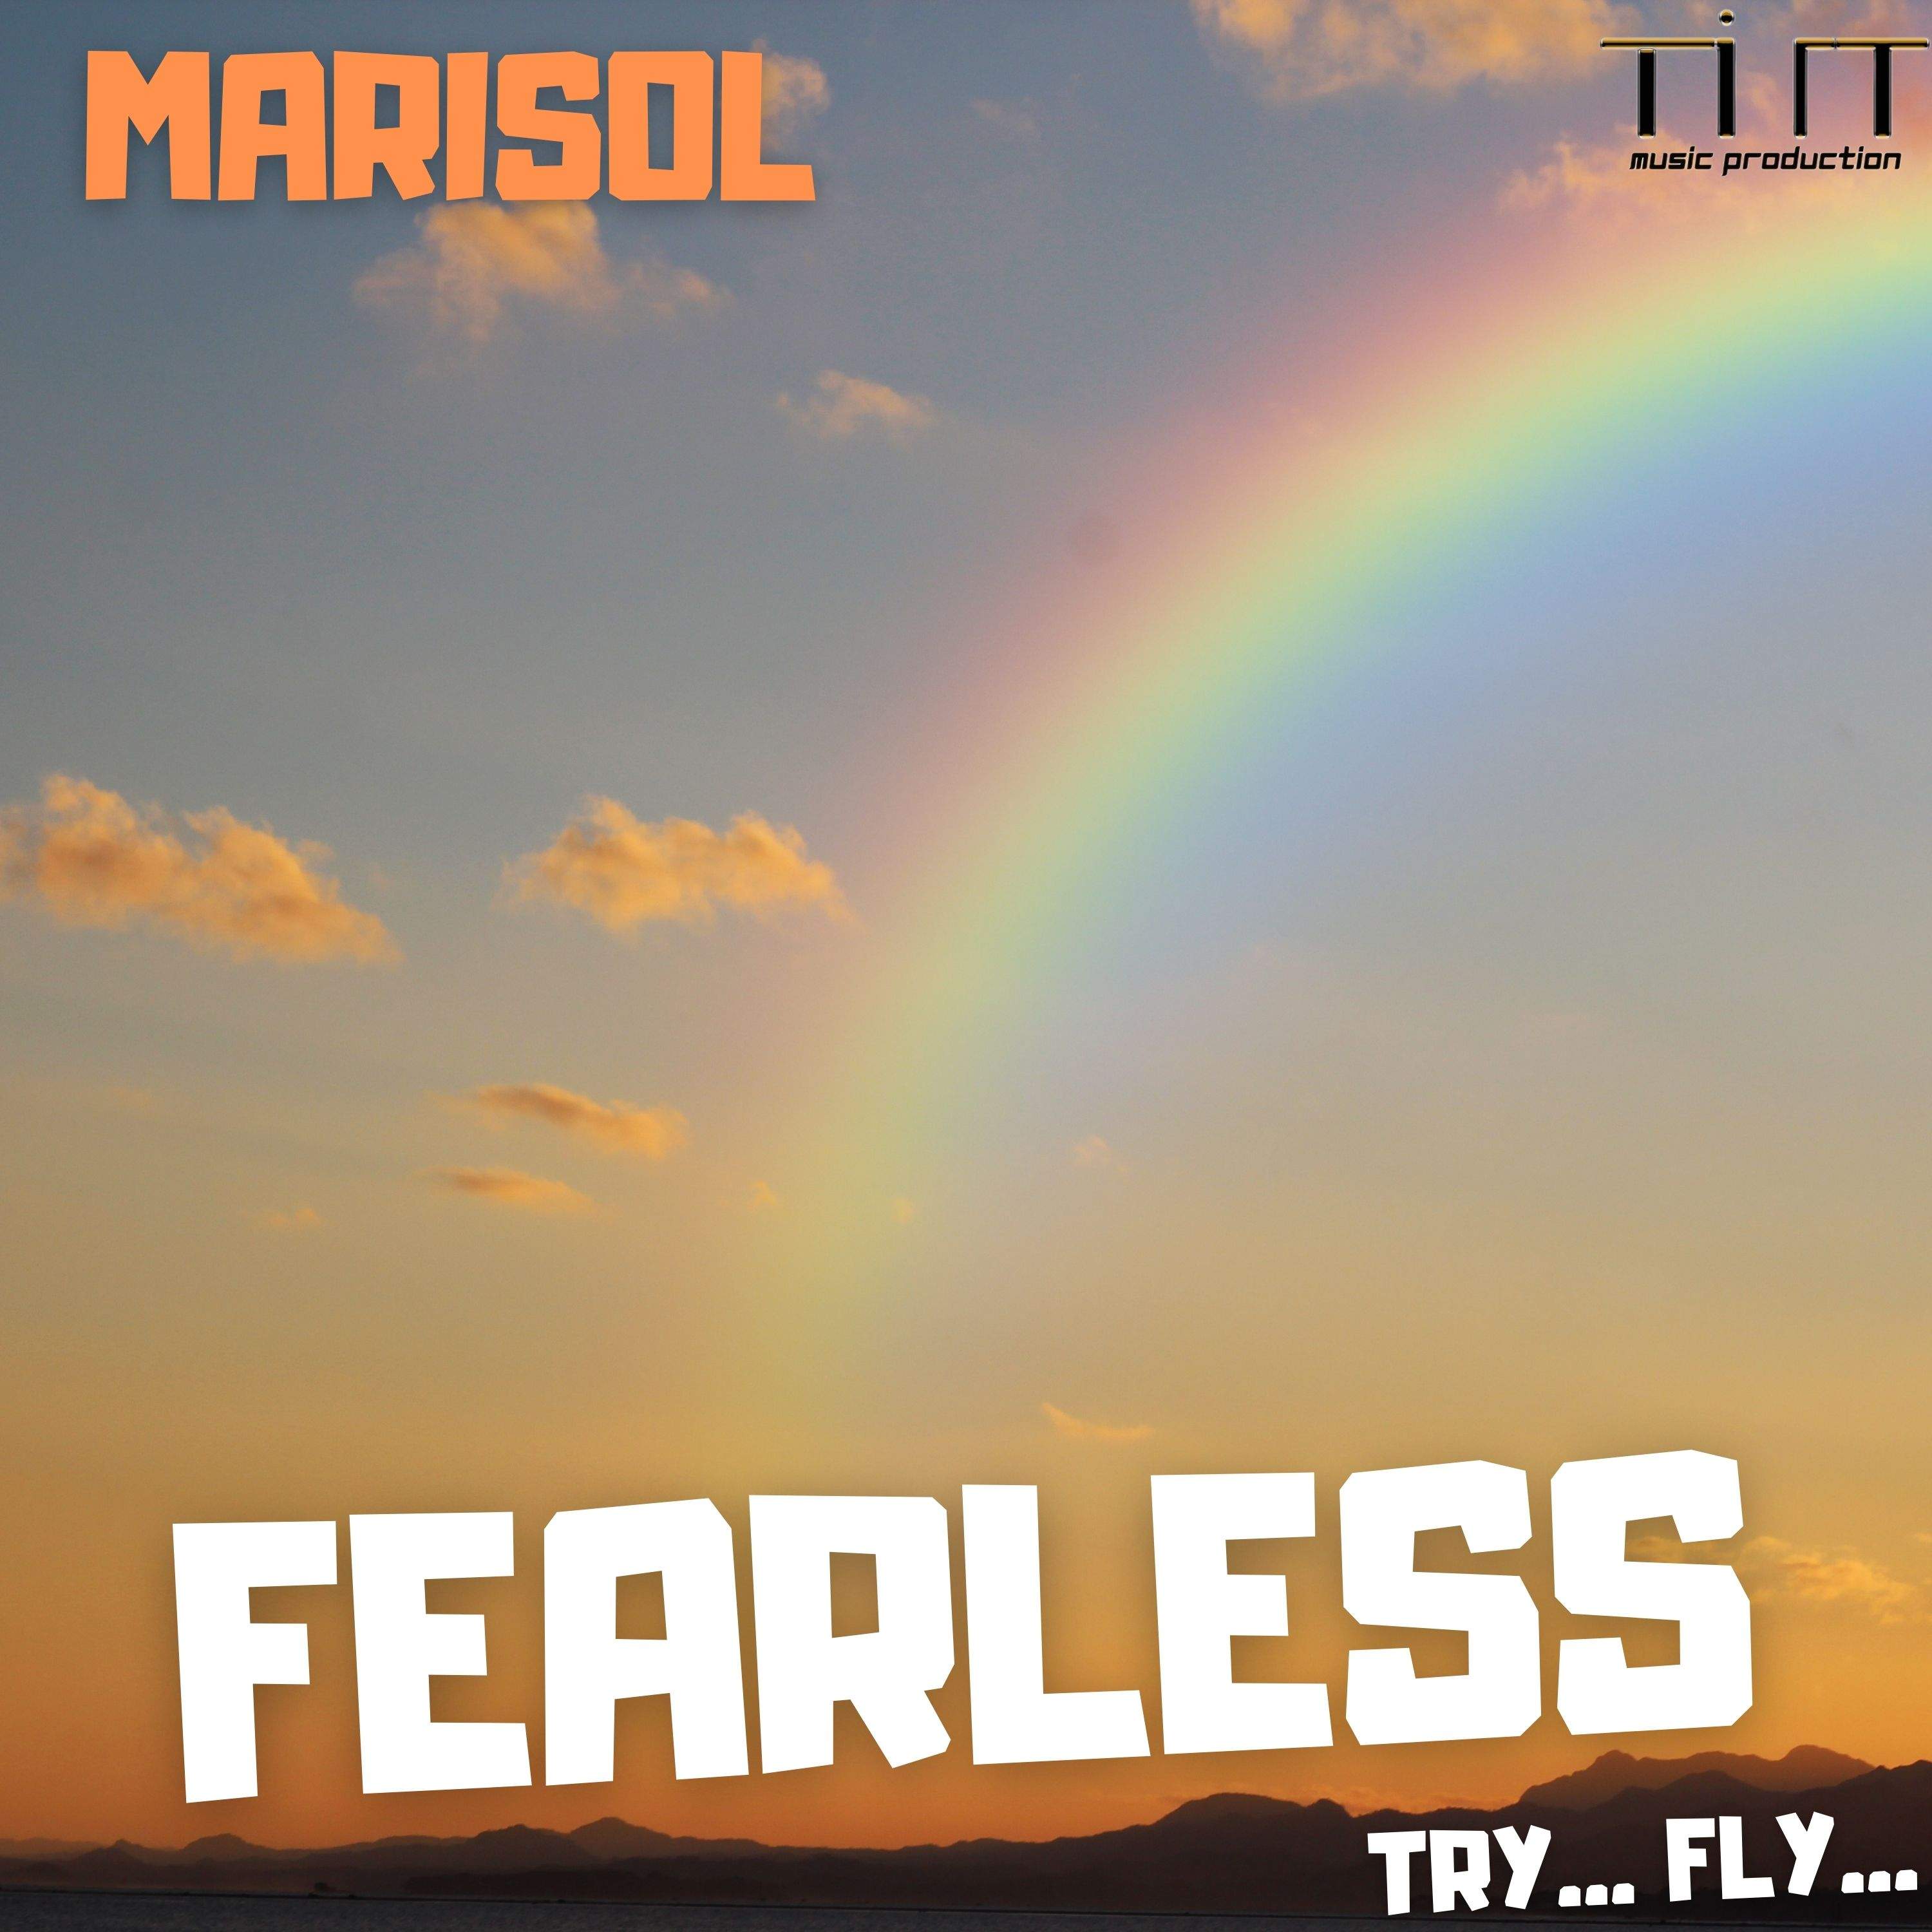 Nuovo brano per Marisol dopo i 60k streams del precedente singolo